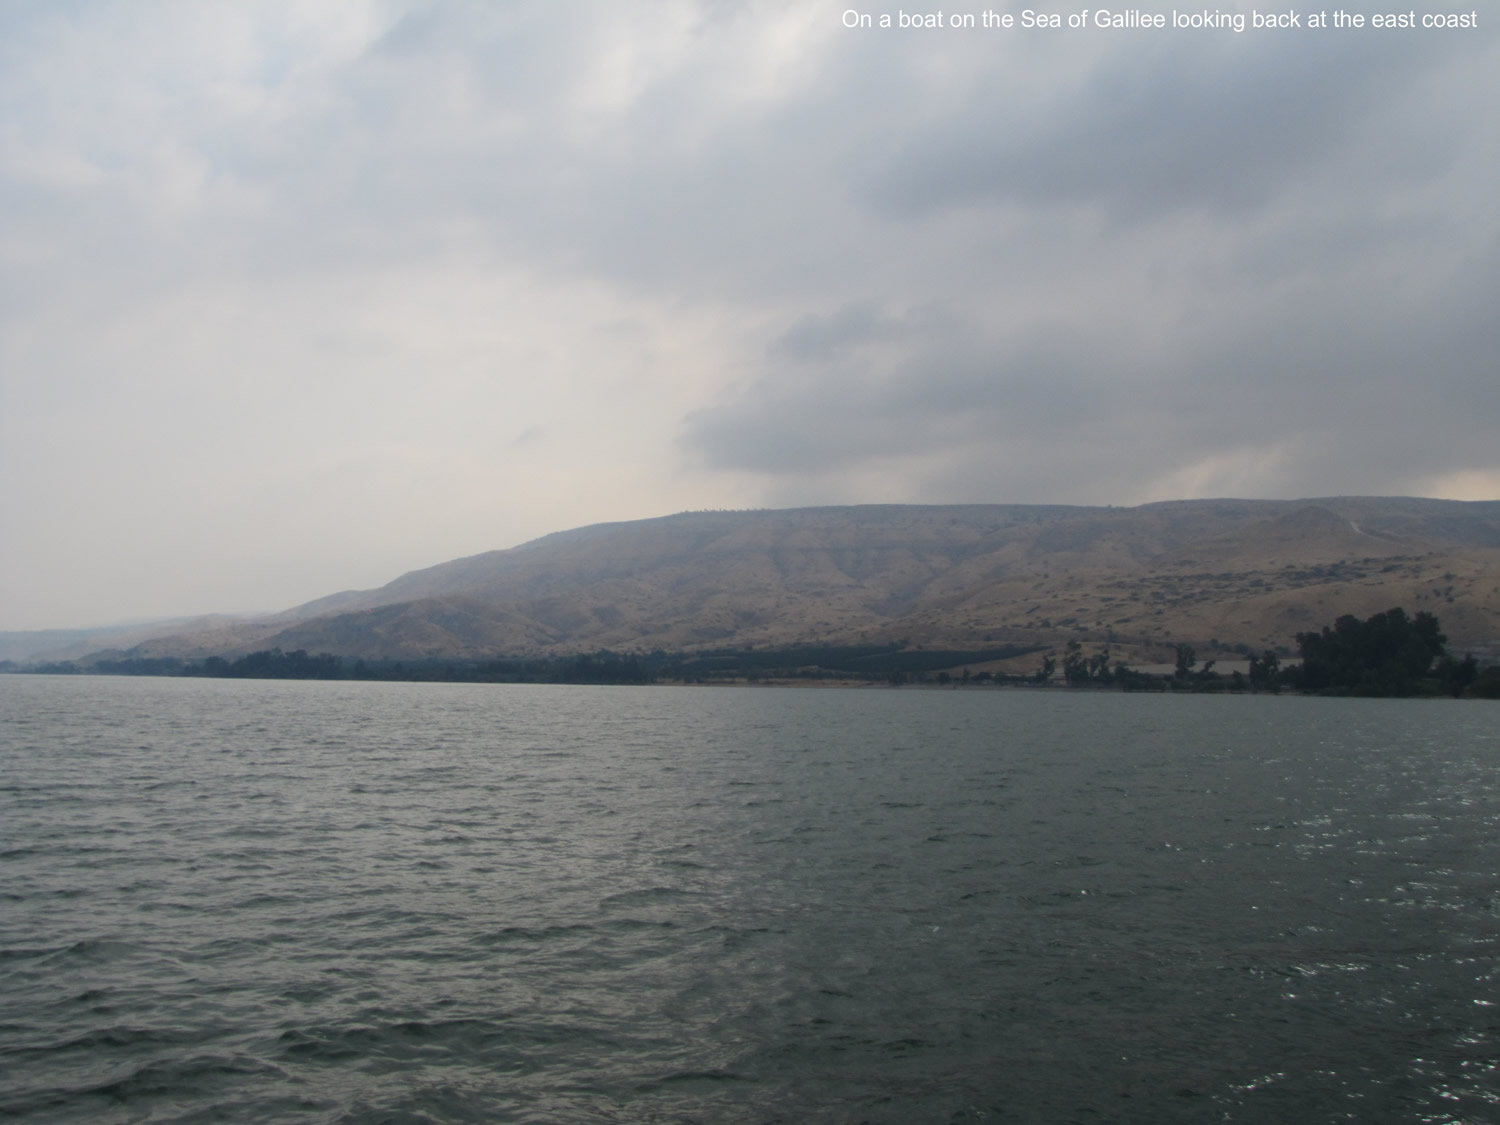 Sea of Galilee, east coast